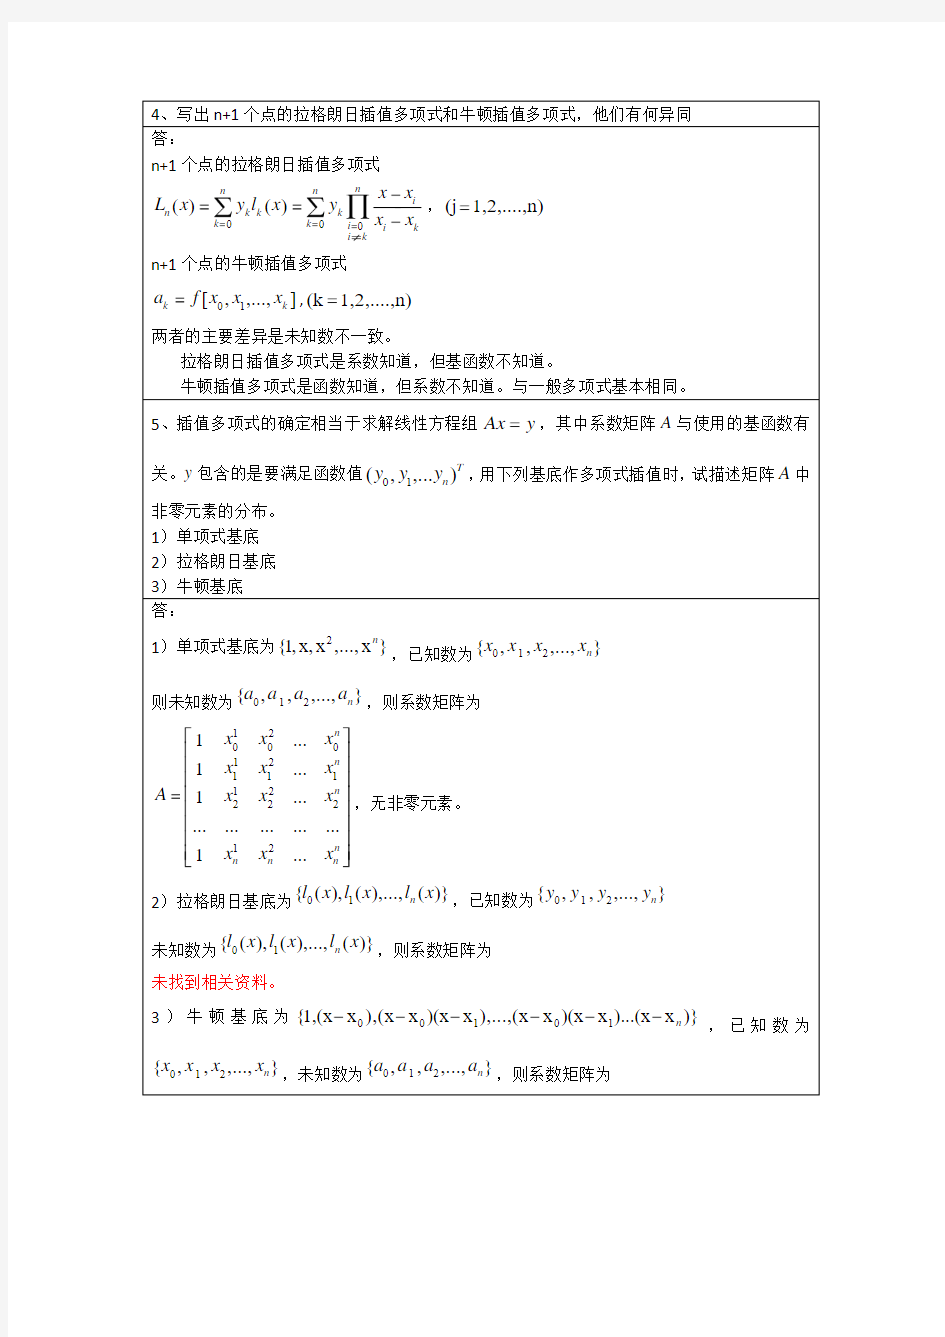 李庆扬-数值分析第五版第2章习题答案(20130625)